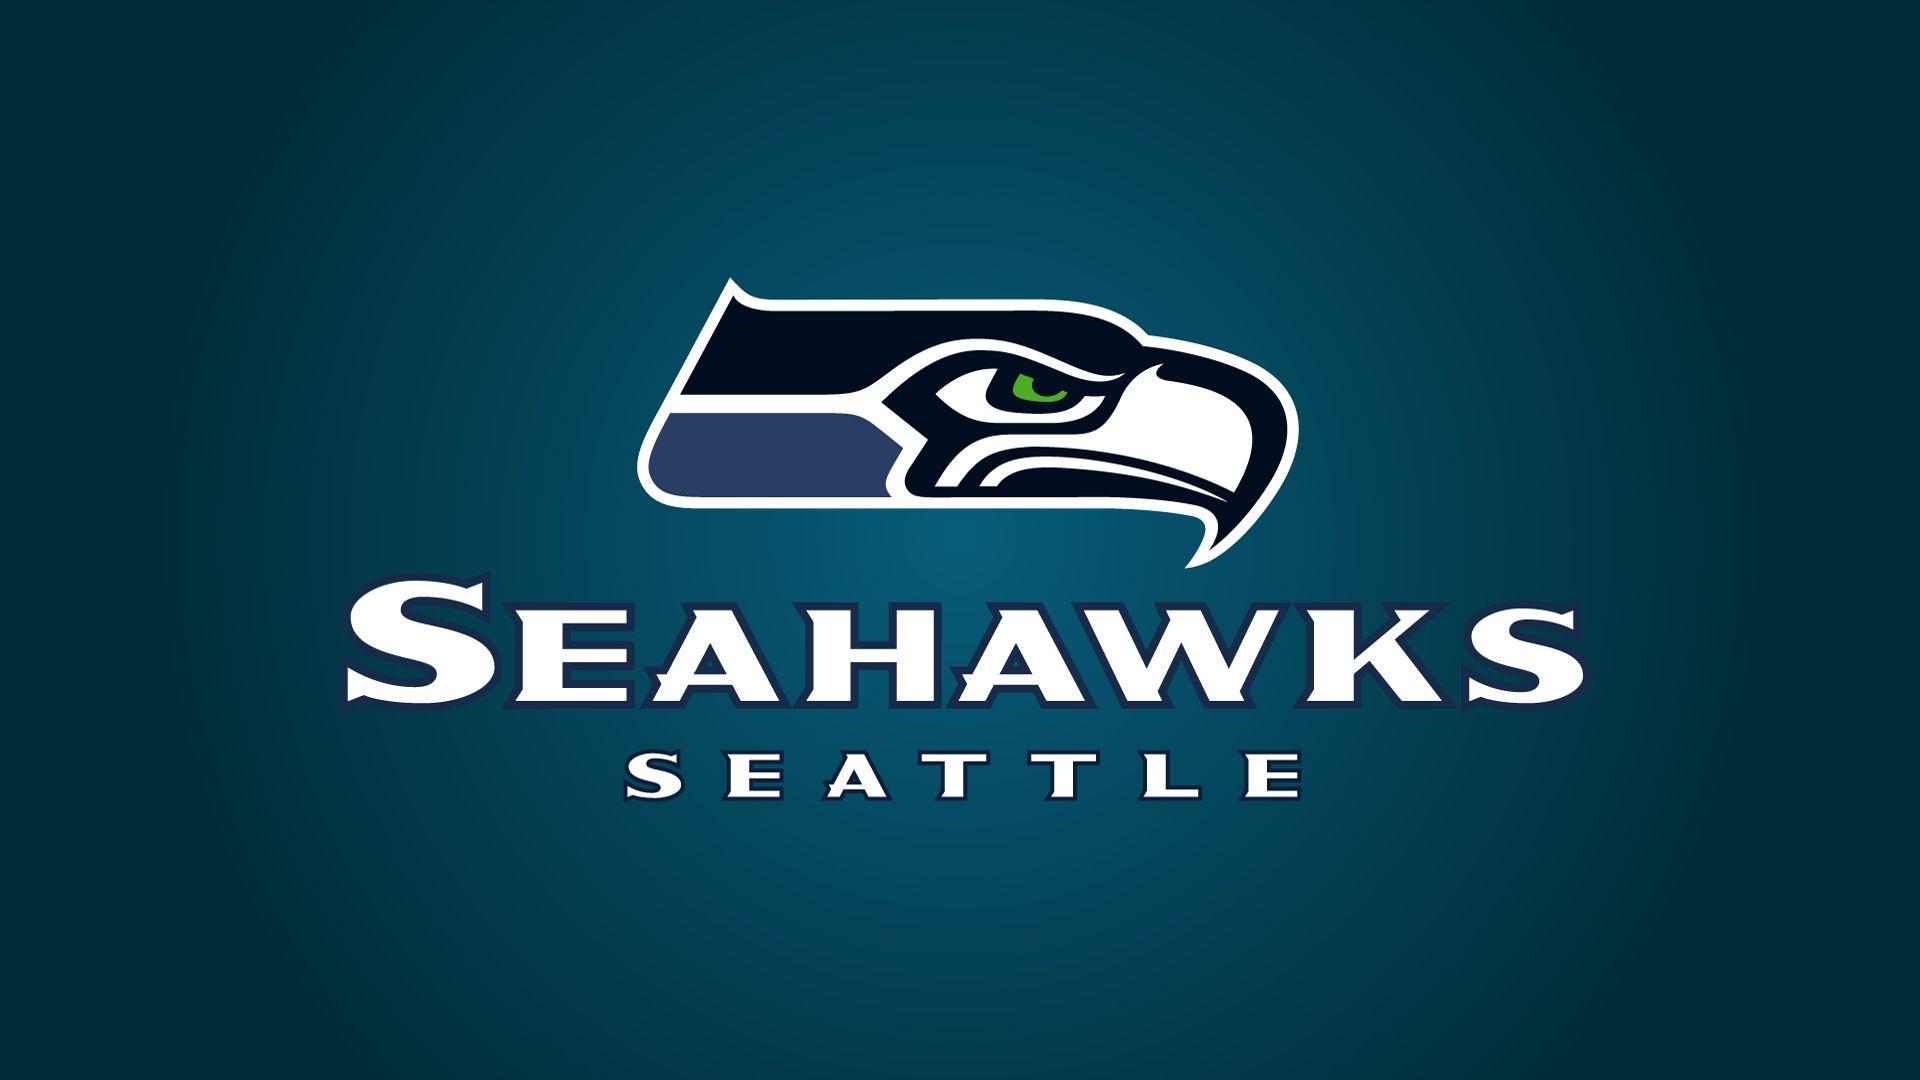 NFL Seahawks Logo - NFL Seattle Seahawks Logo 1920x1080 HD NFL / Seattle Seahawks